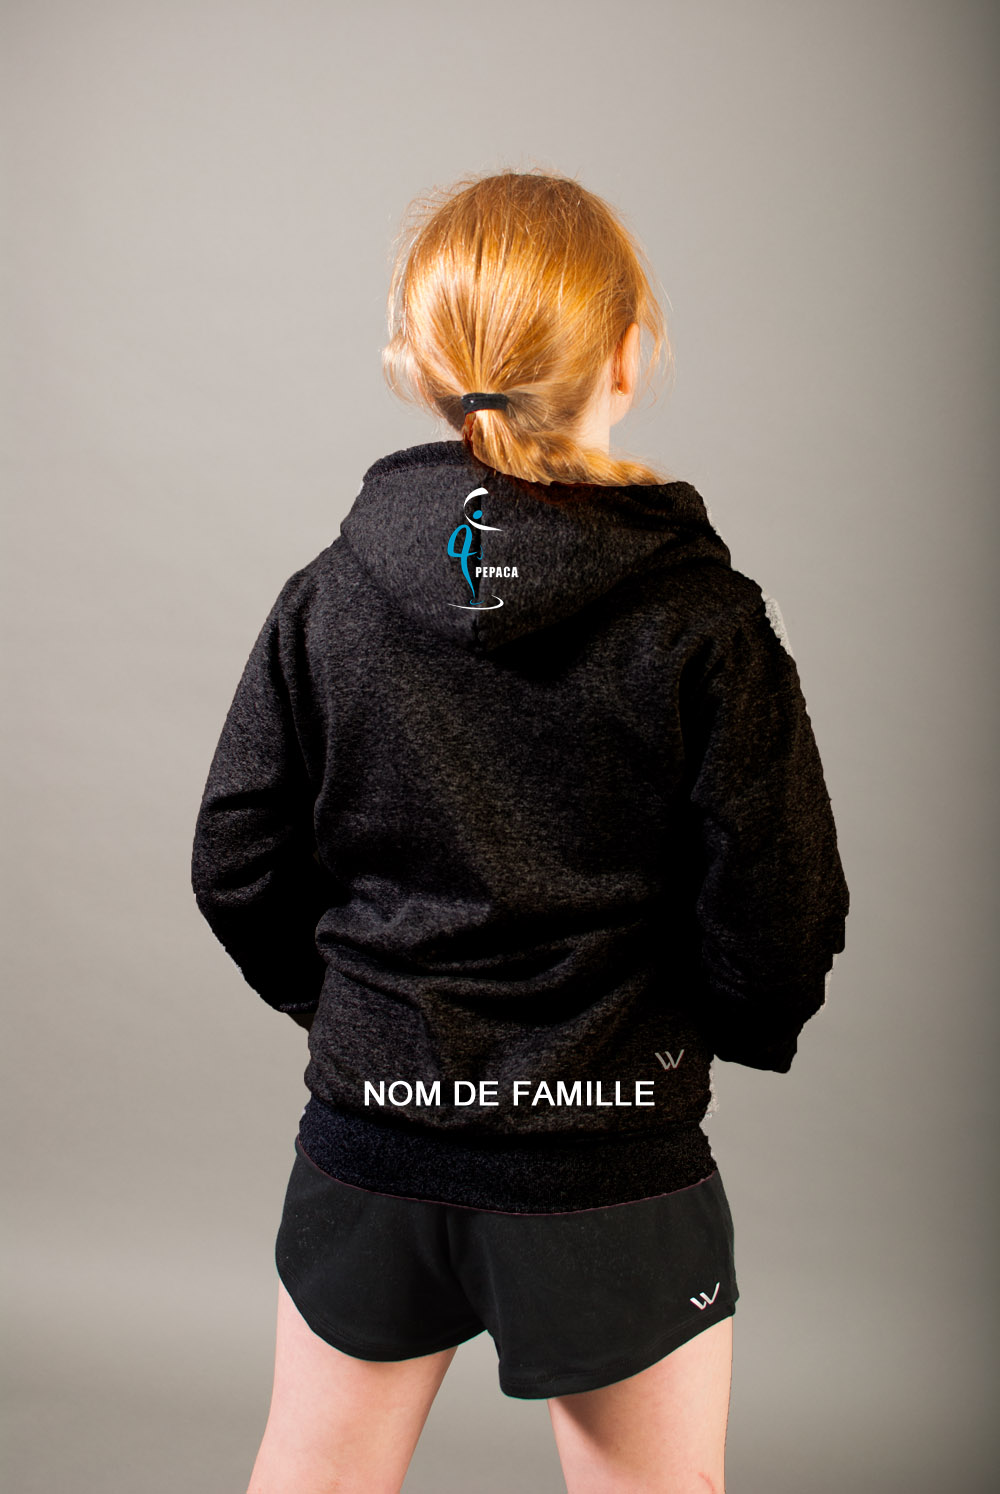 Vêtement Création Wissa fait 100% au Québec : Coton ouaté - hoodie - Pepaca